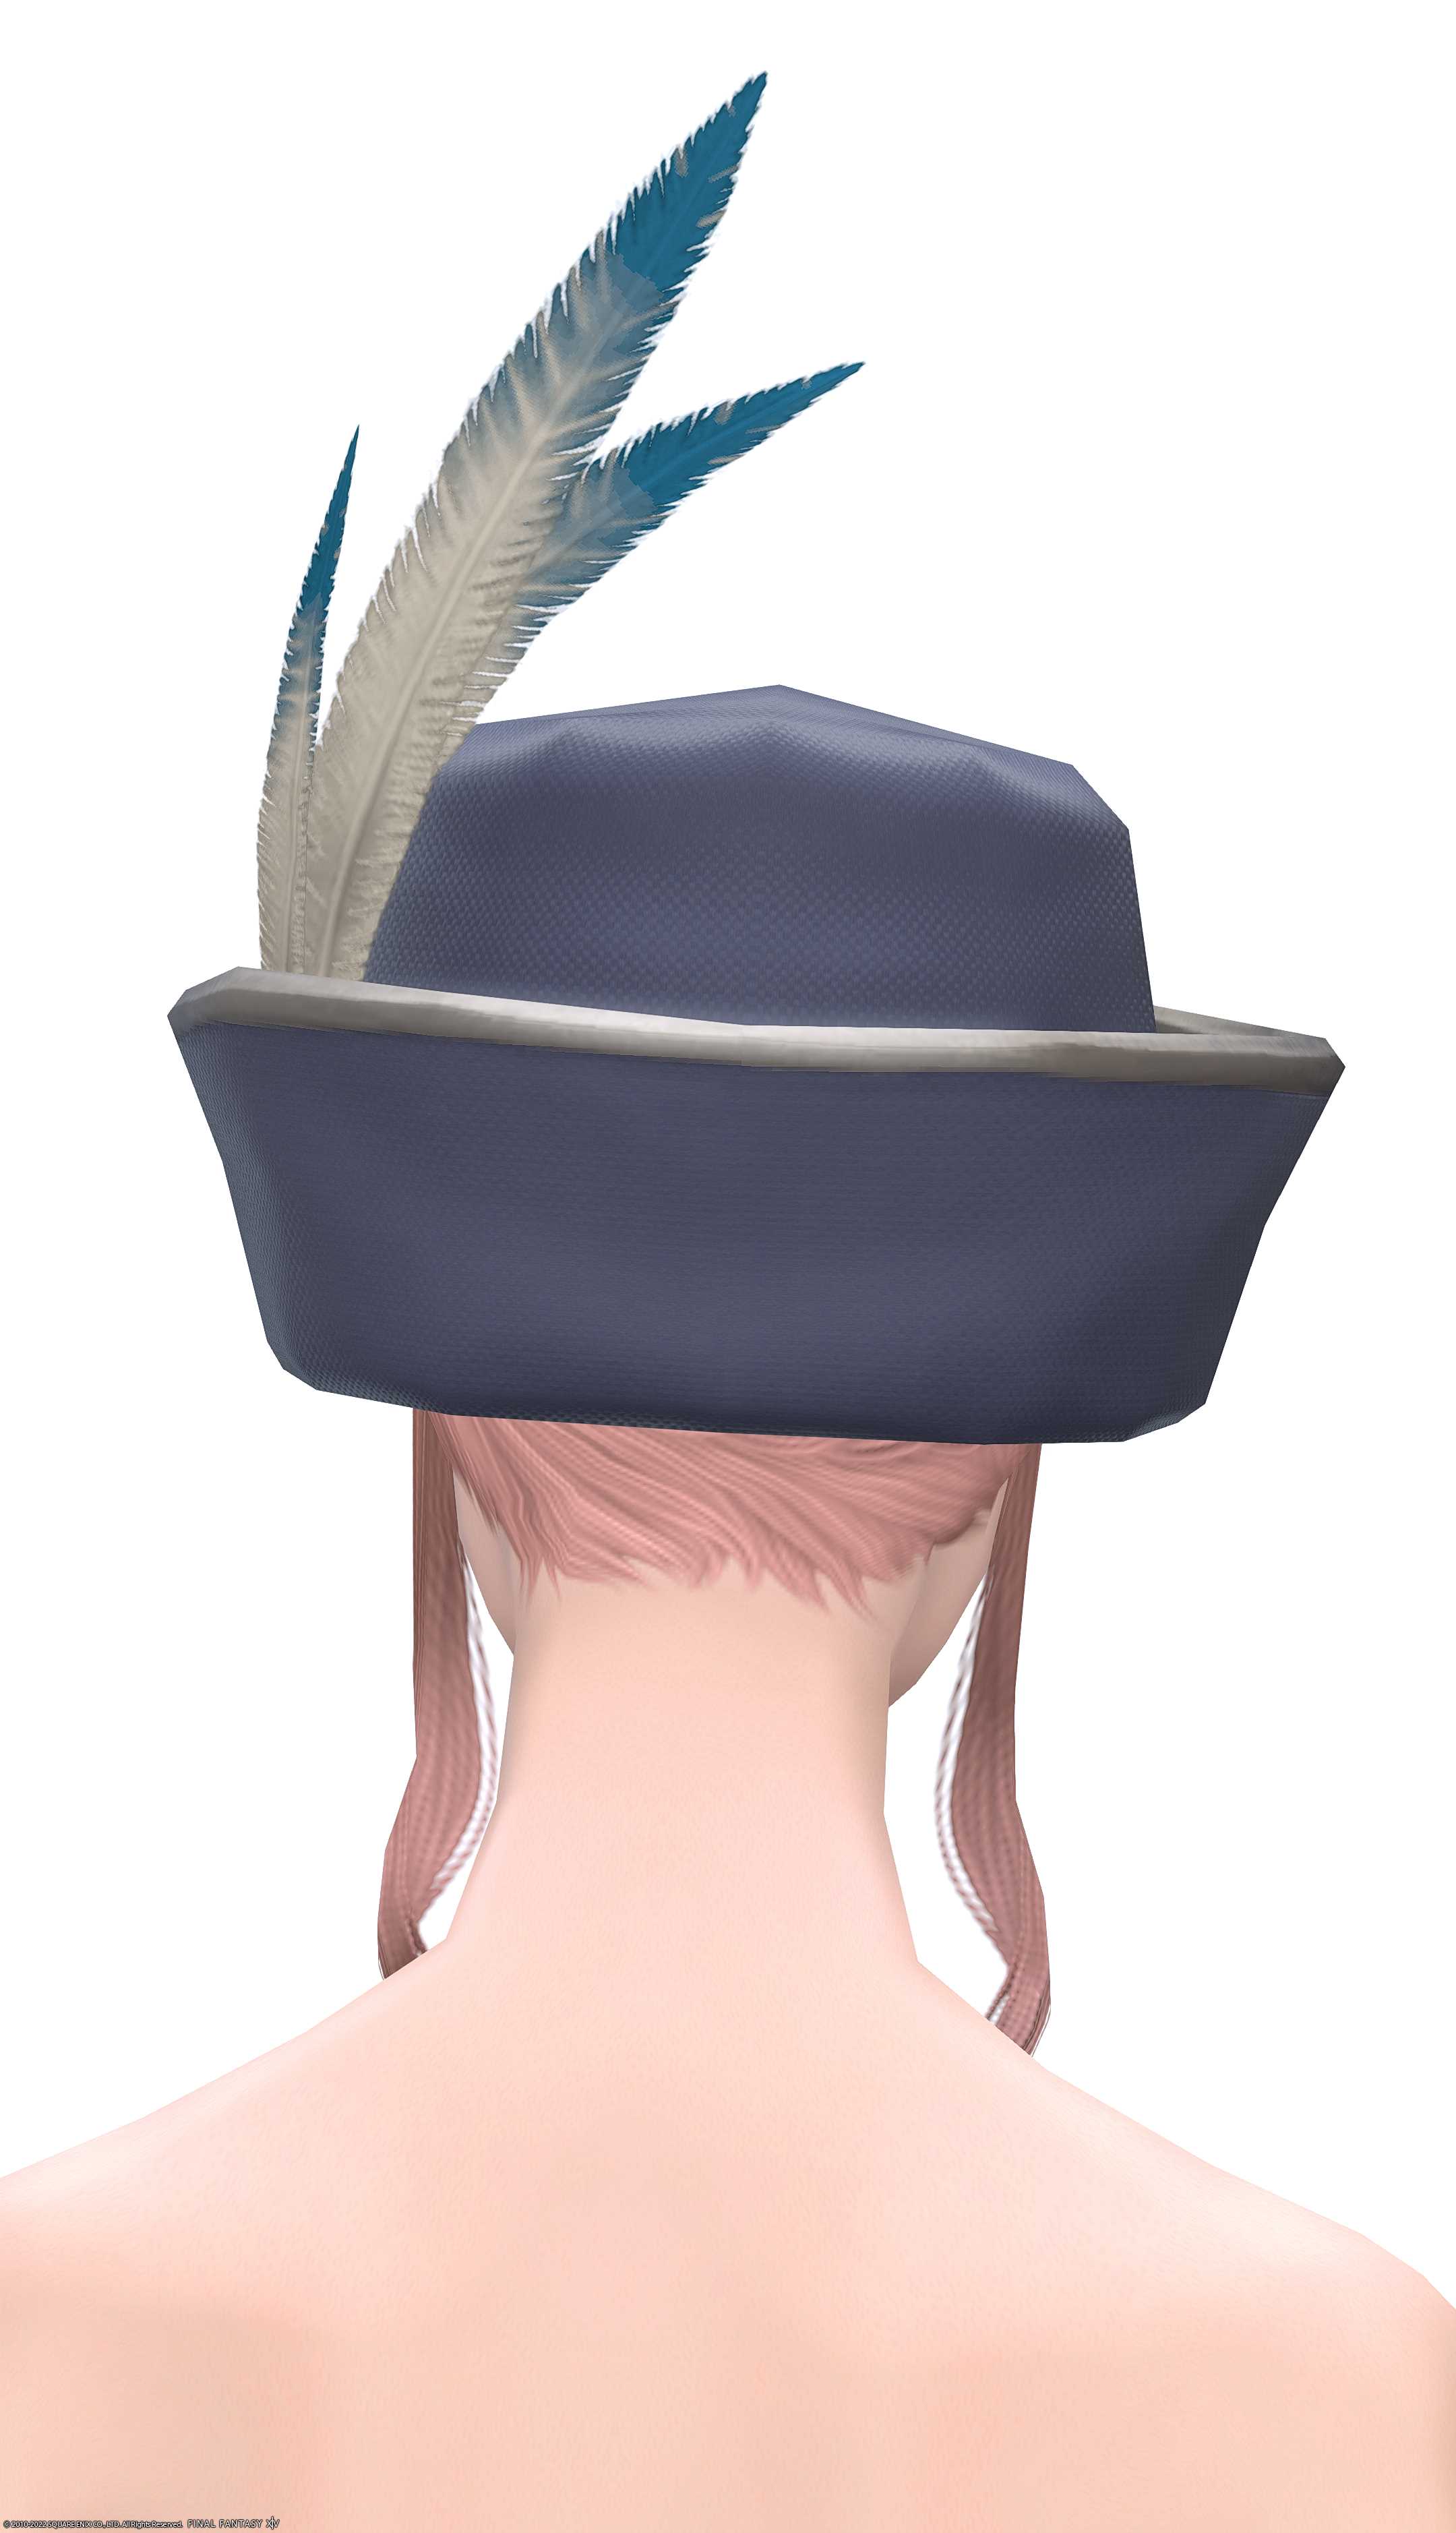 ヴァレリアンブロウラー・ハット | FF14ミラプリ - Valerian Brawler's Hat - 帽子/ハット